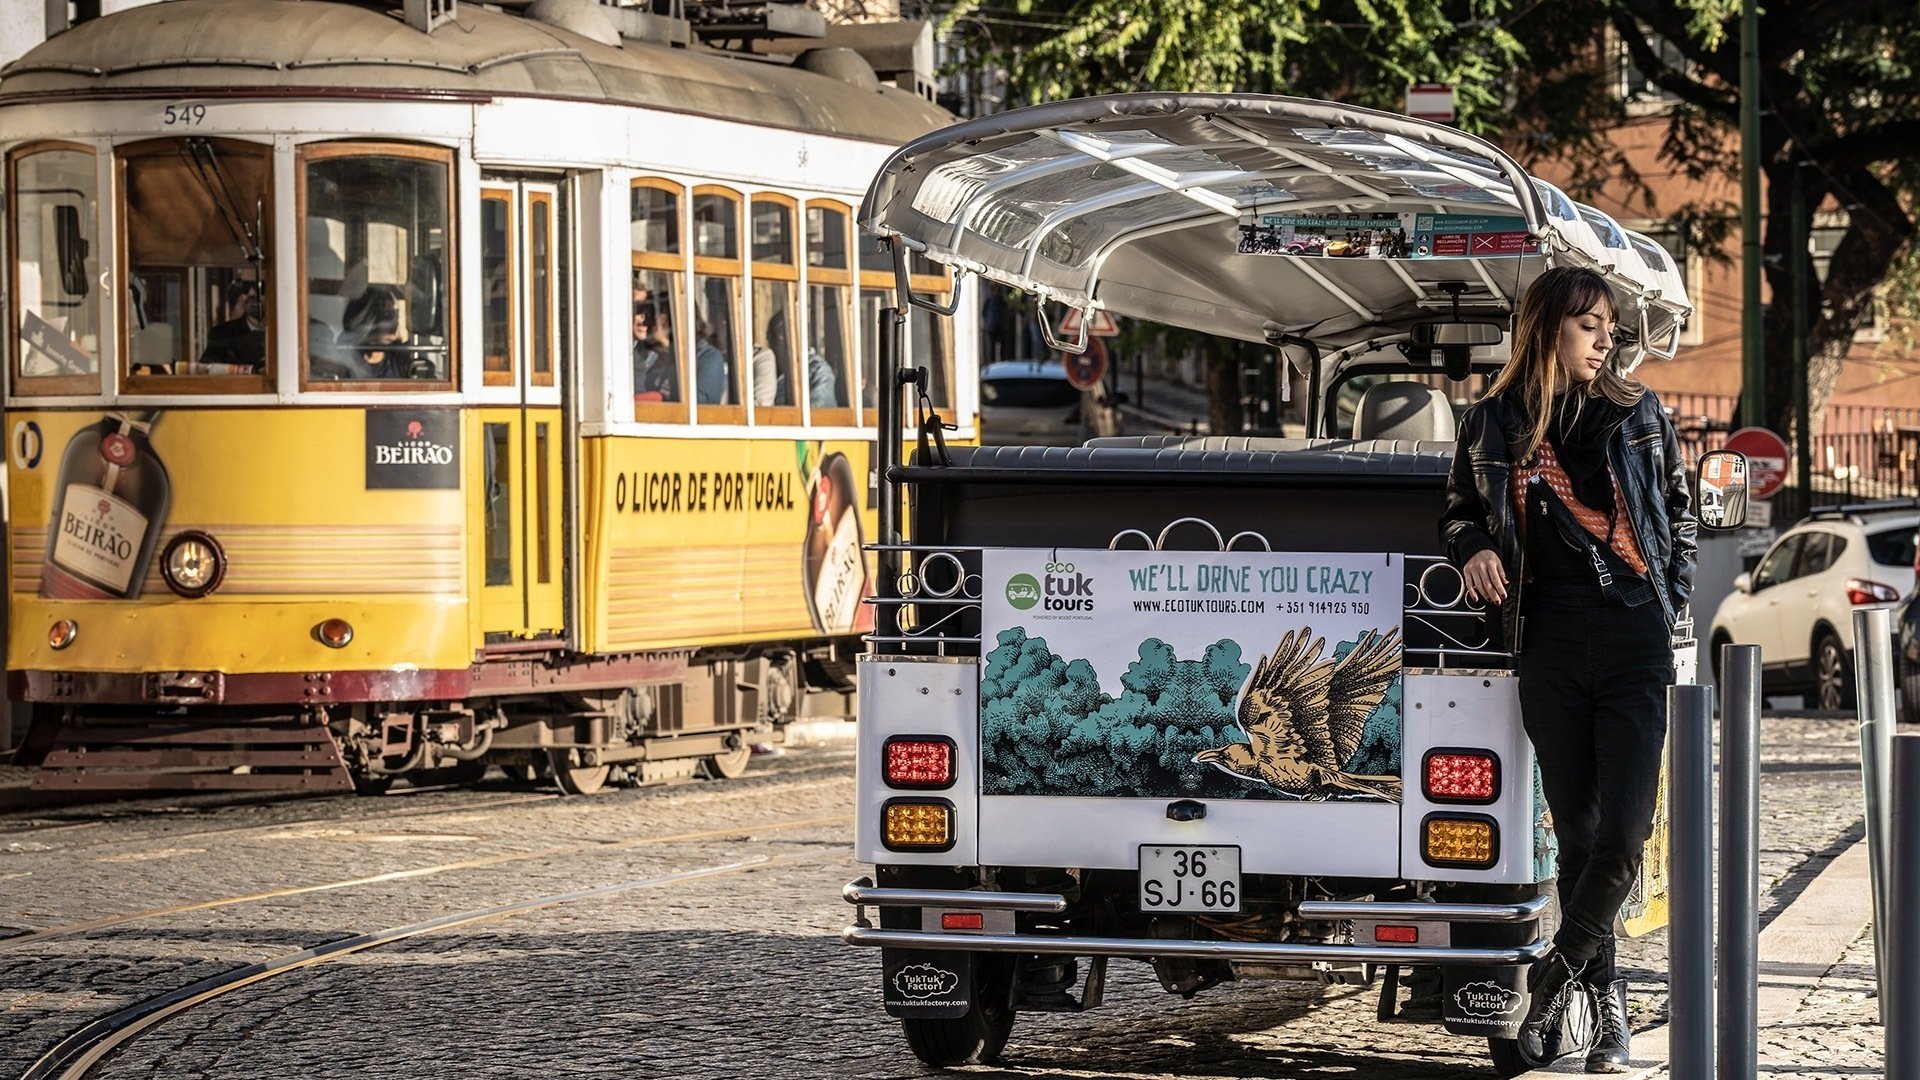 Découvrez Lisbonne à travers le célèbre tramway 28